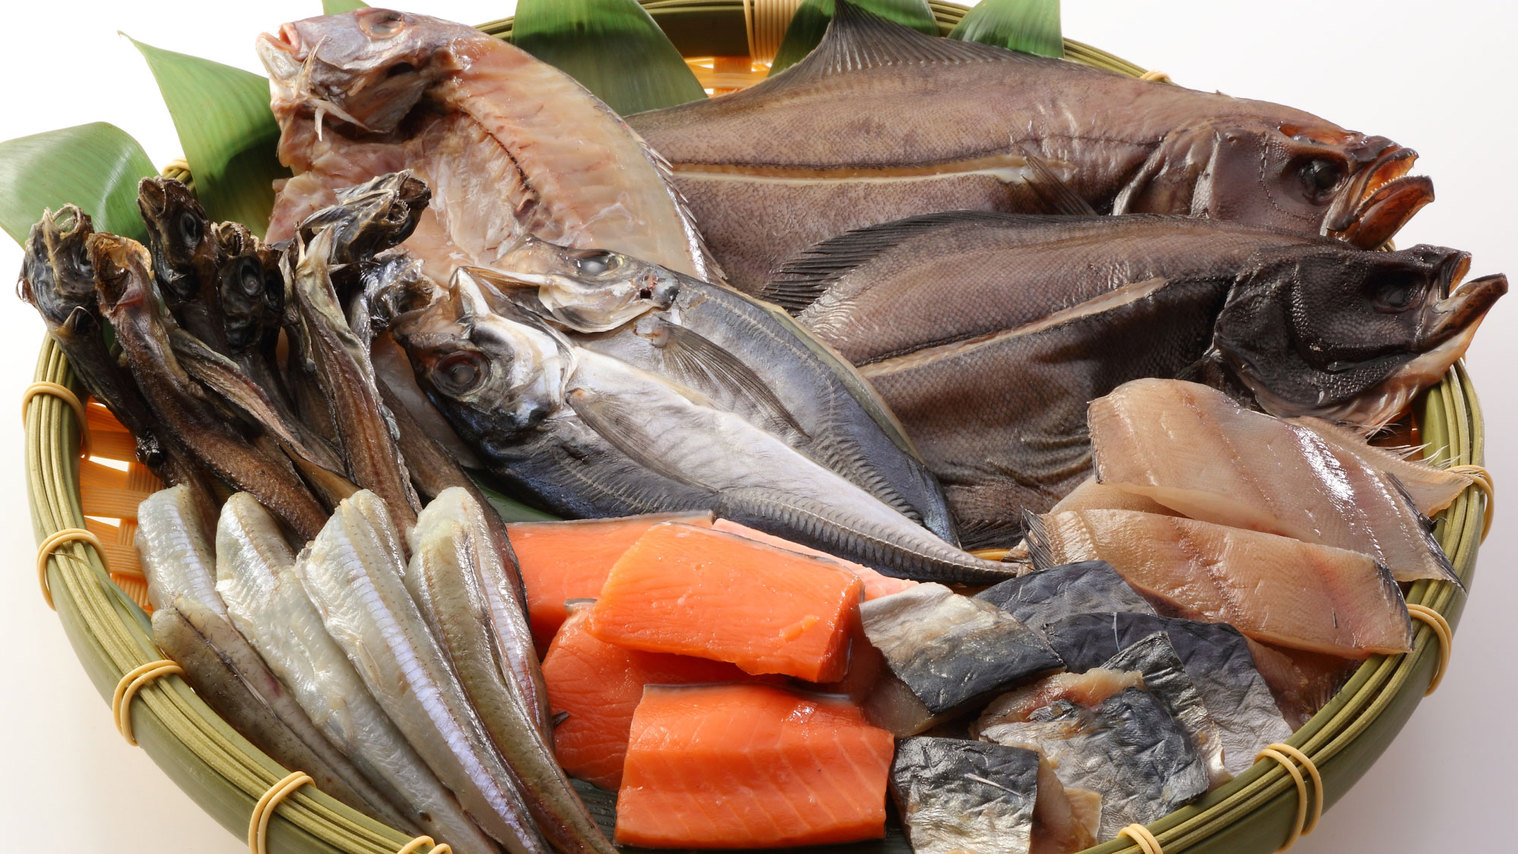 【炭火焼〜海の恵み〜】新潟県近海で捕れた魚の干物3種をご提供